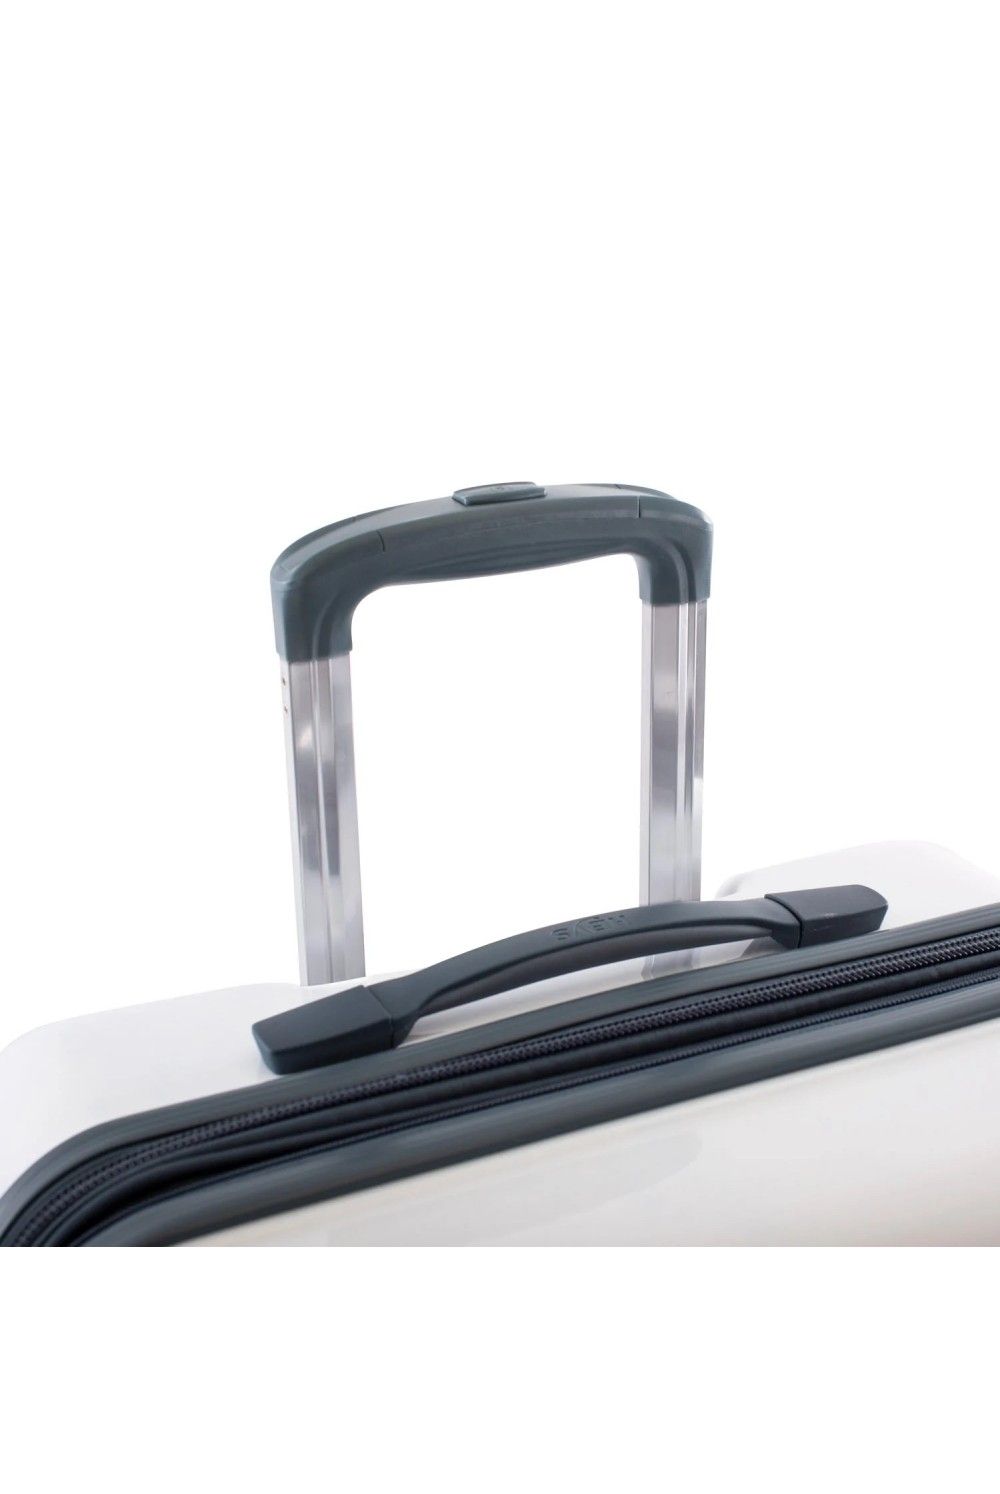 Suitcase hand luggage Heys Blue Fashion 4 wheel 55cm expandable